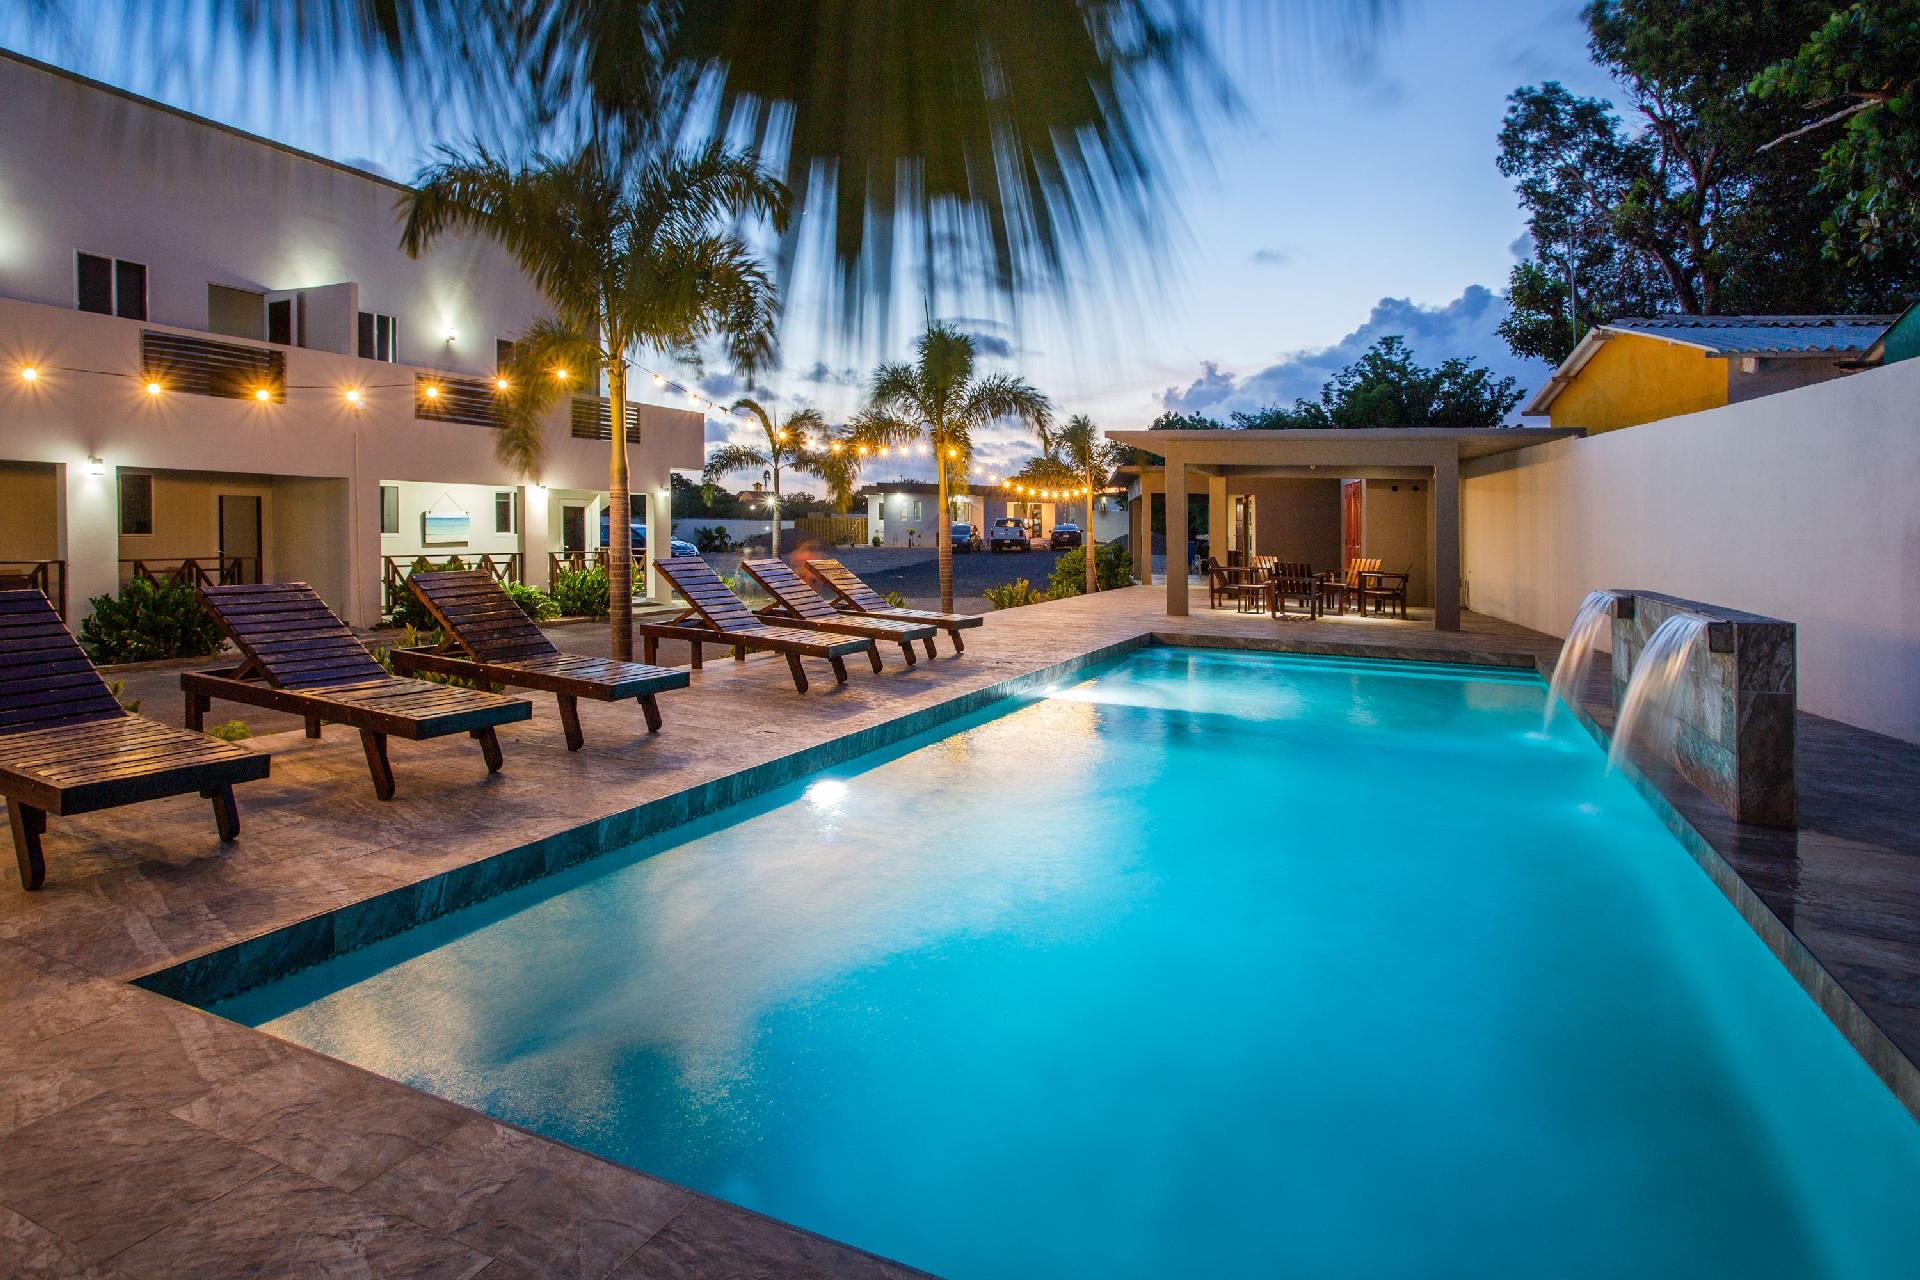 Ferienwohnung für 4 Personen ca. 80 m² i Ferienhaus in Mittelamerika und Karibik